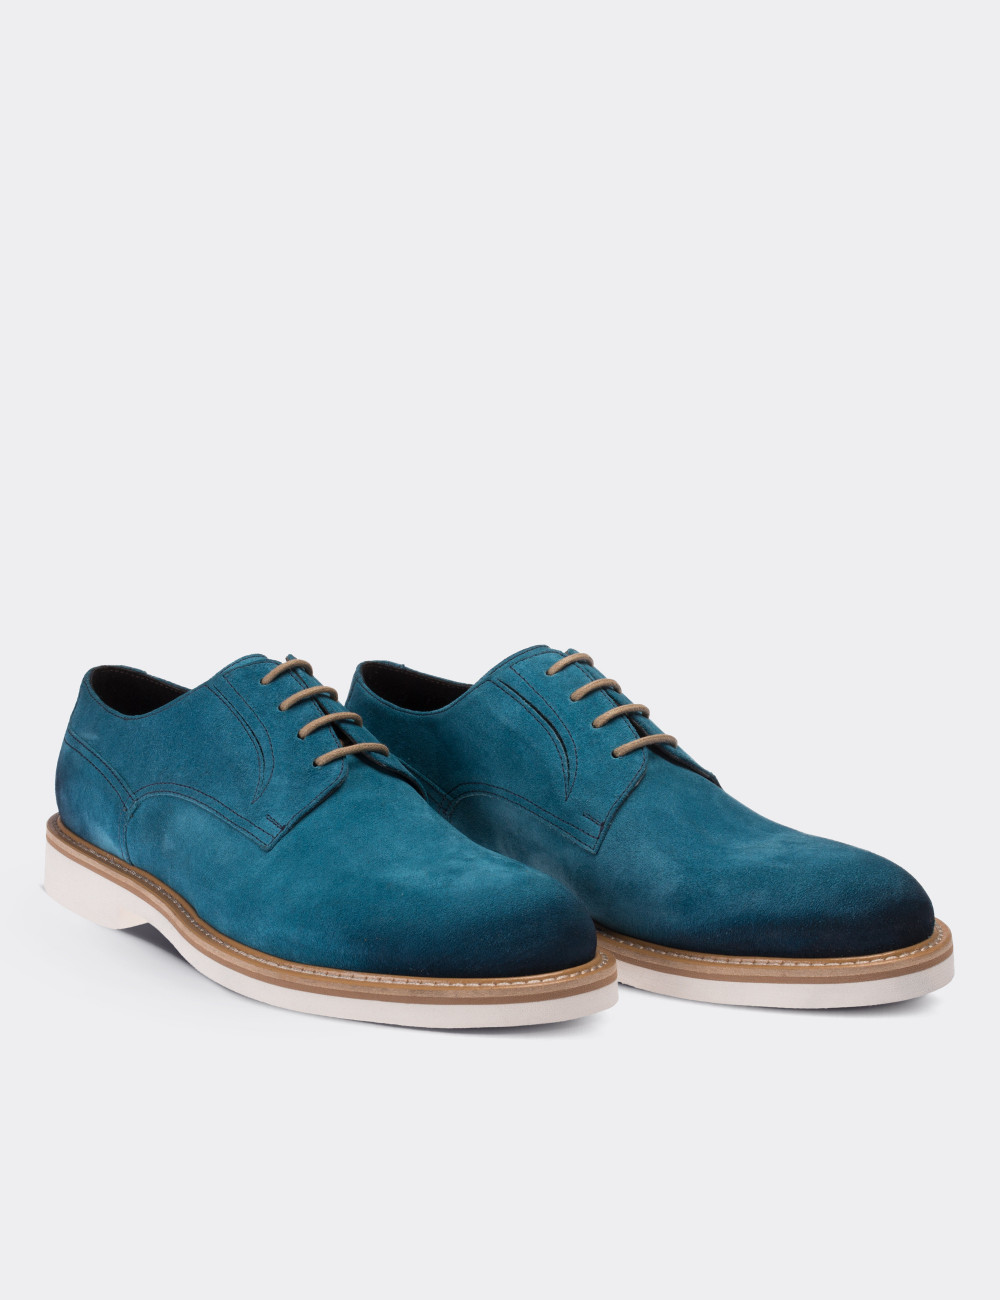 blue lace up shoes